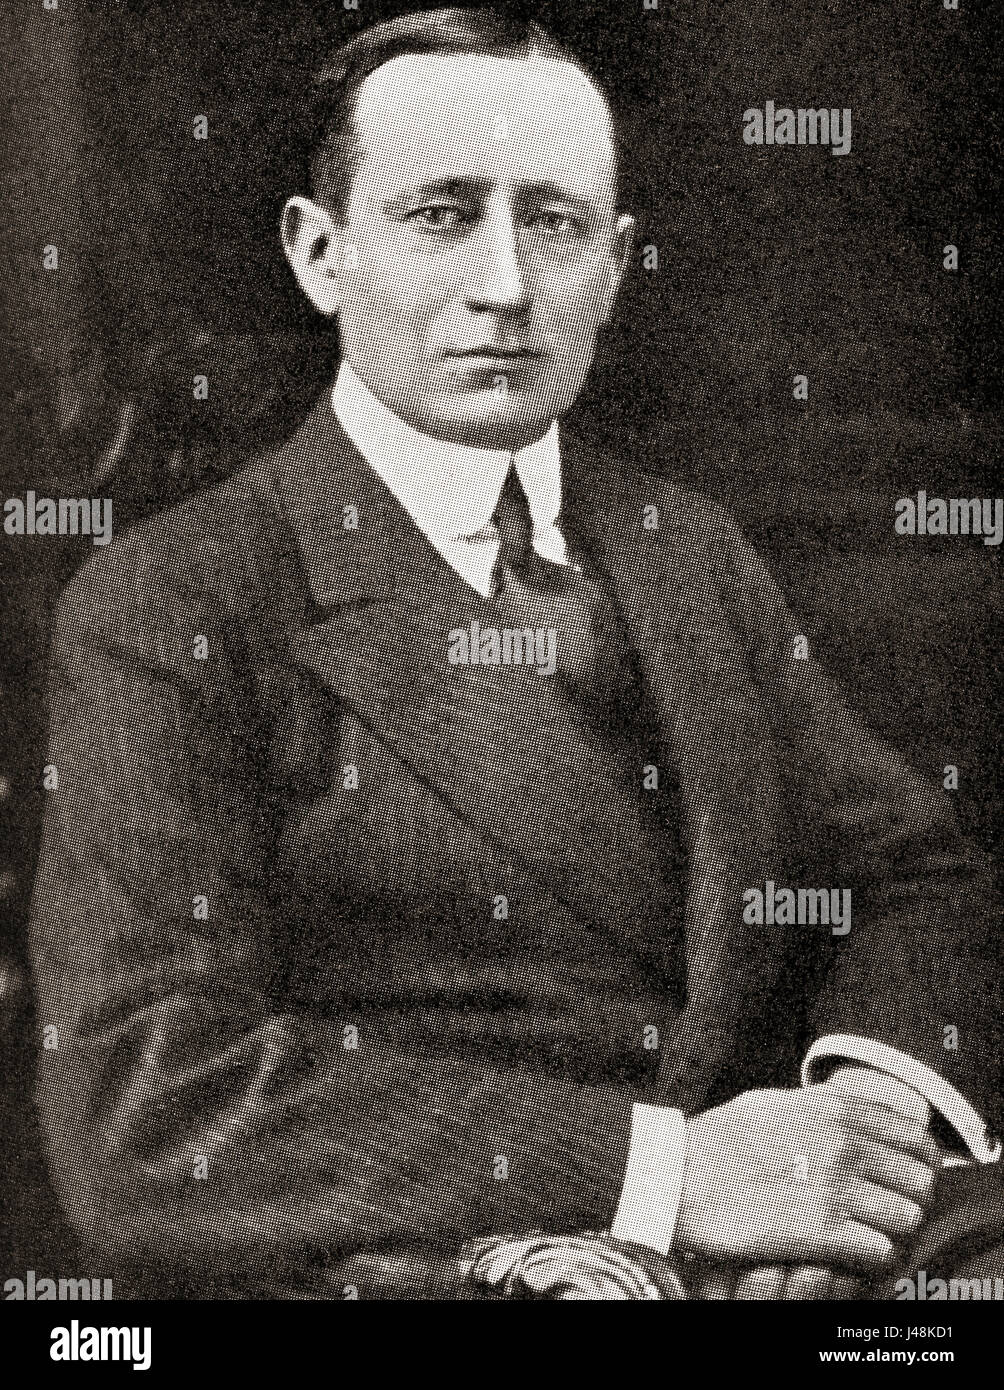 Guglielmo Marconi, 1er marquis de Marconi, 1874 - 1937. Ingénieur en  électricité et inventeur italien. Célèbre pour son travail de pionnier sur  la transmission radio à longue distance, son développement de Marconi's